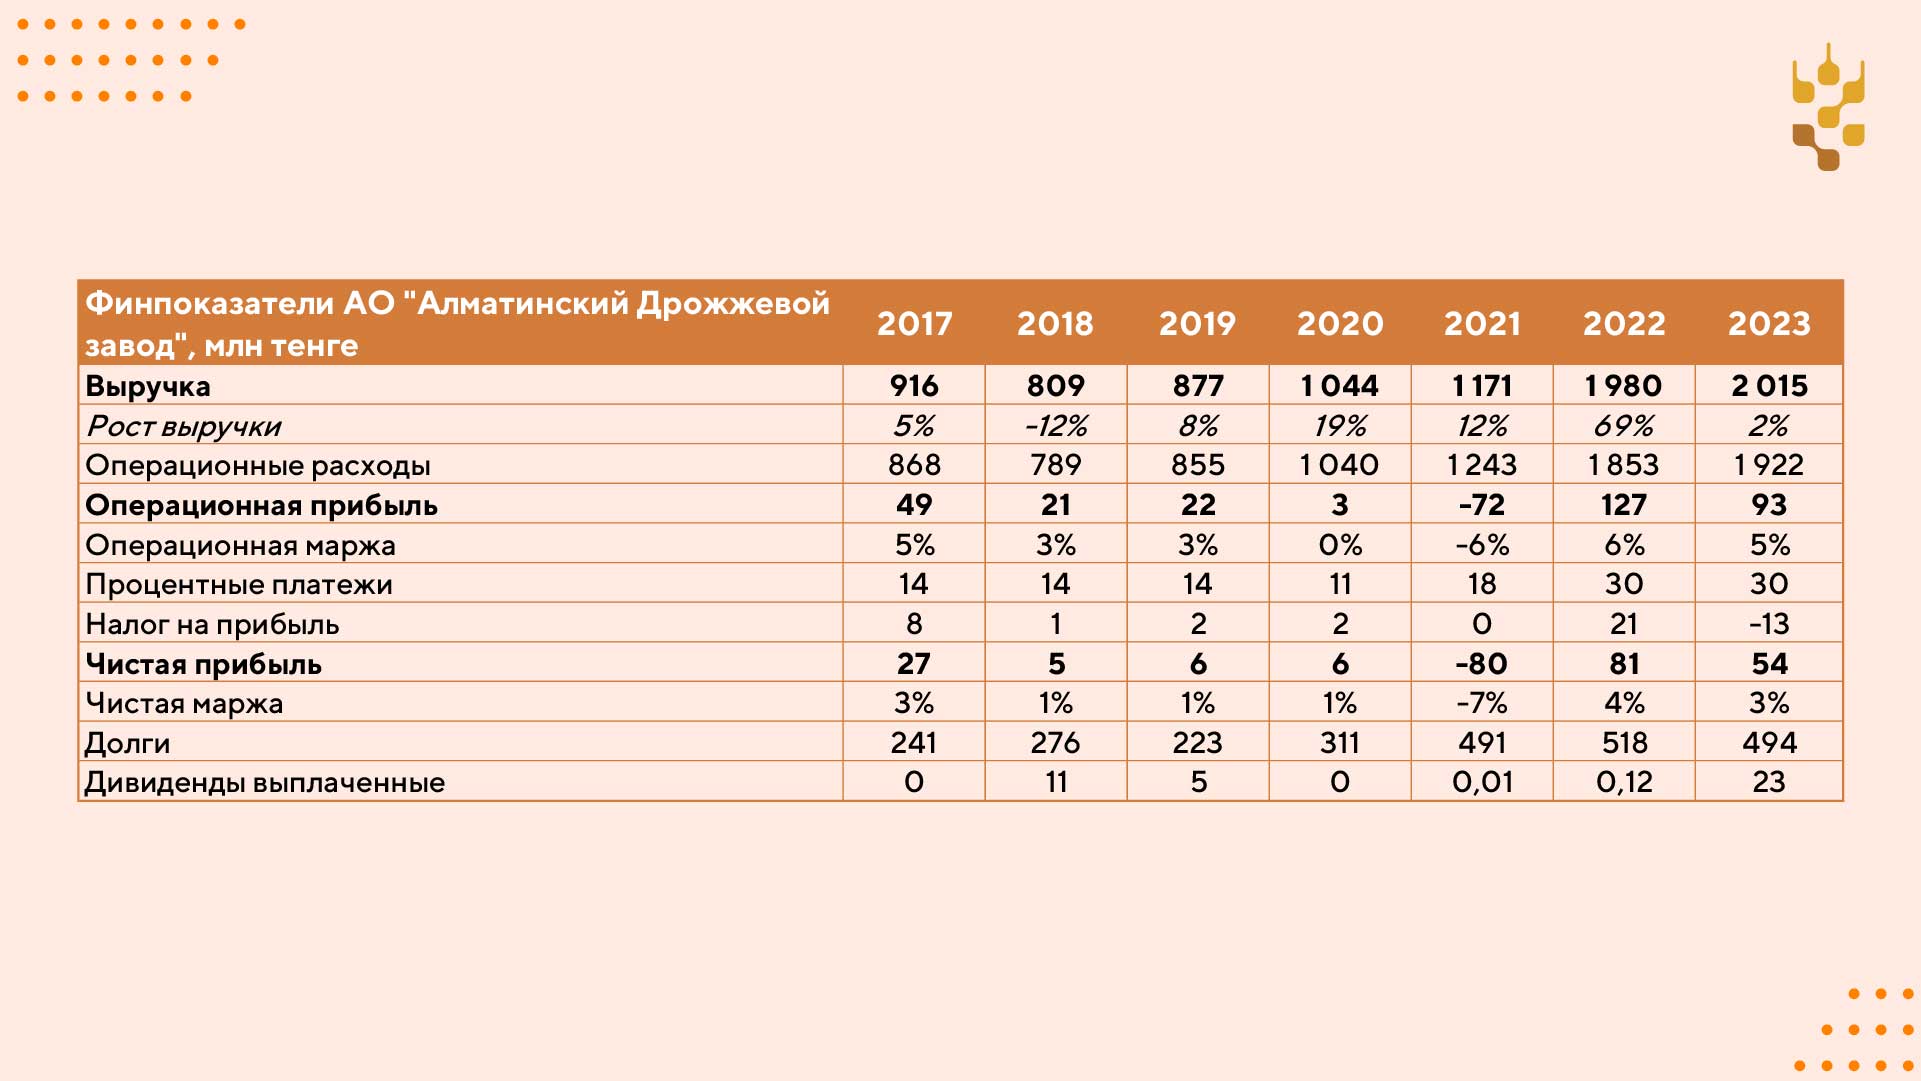 Алматинский дрожжевой завод: итоги 2023 года